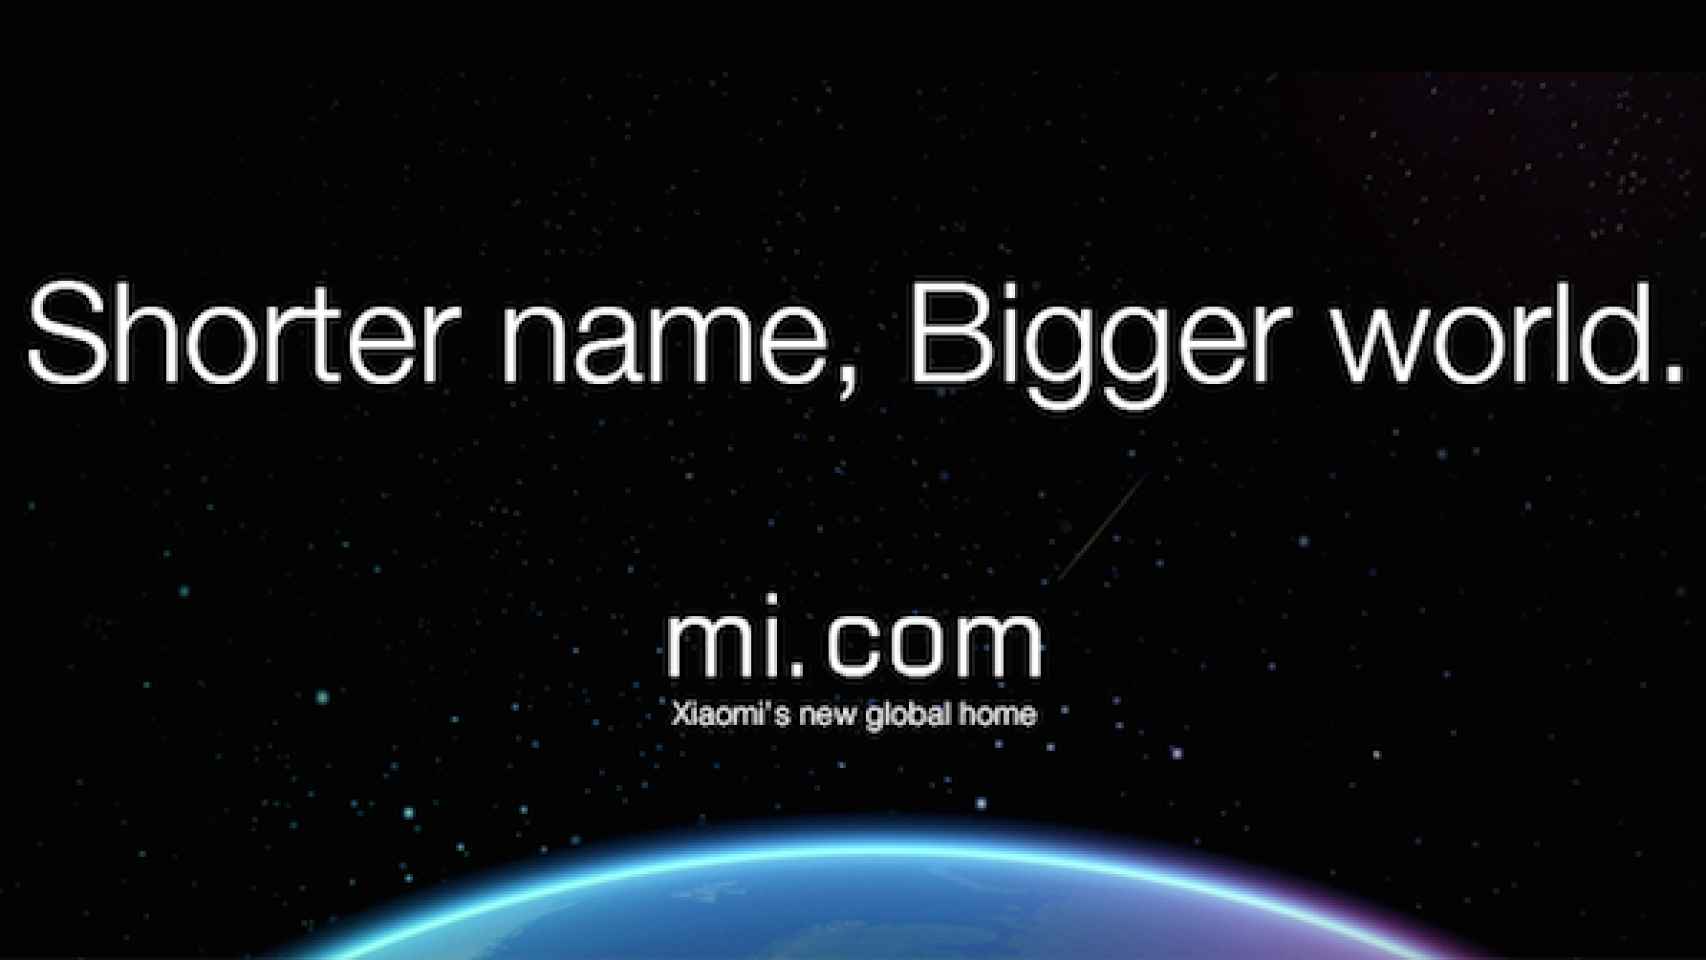 MI.com, nueva web de Xiaomi para iniciar su expansión internacional